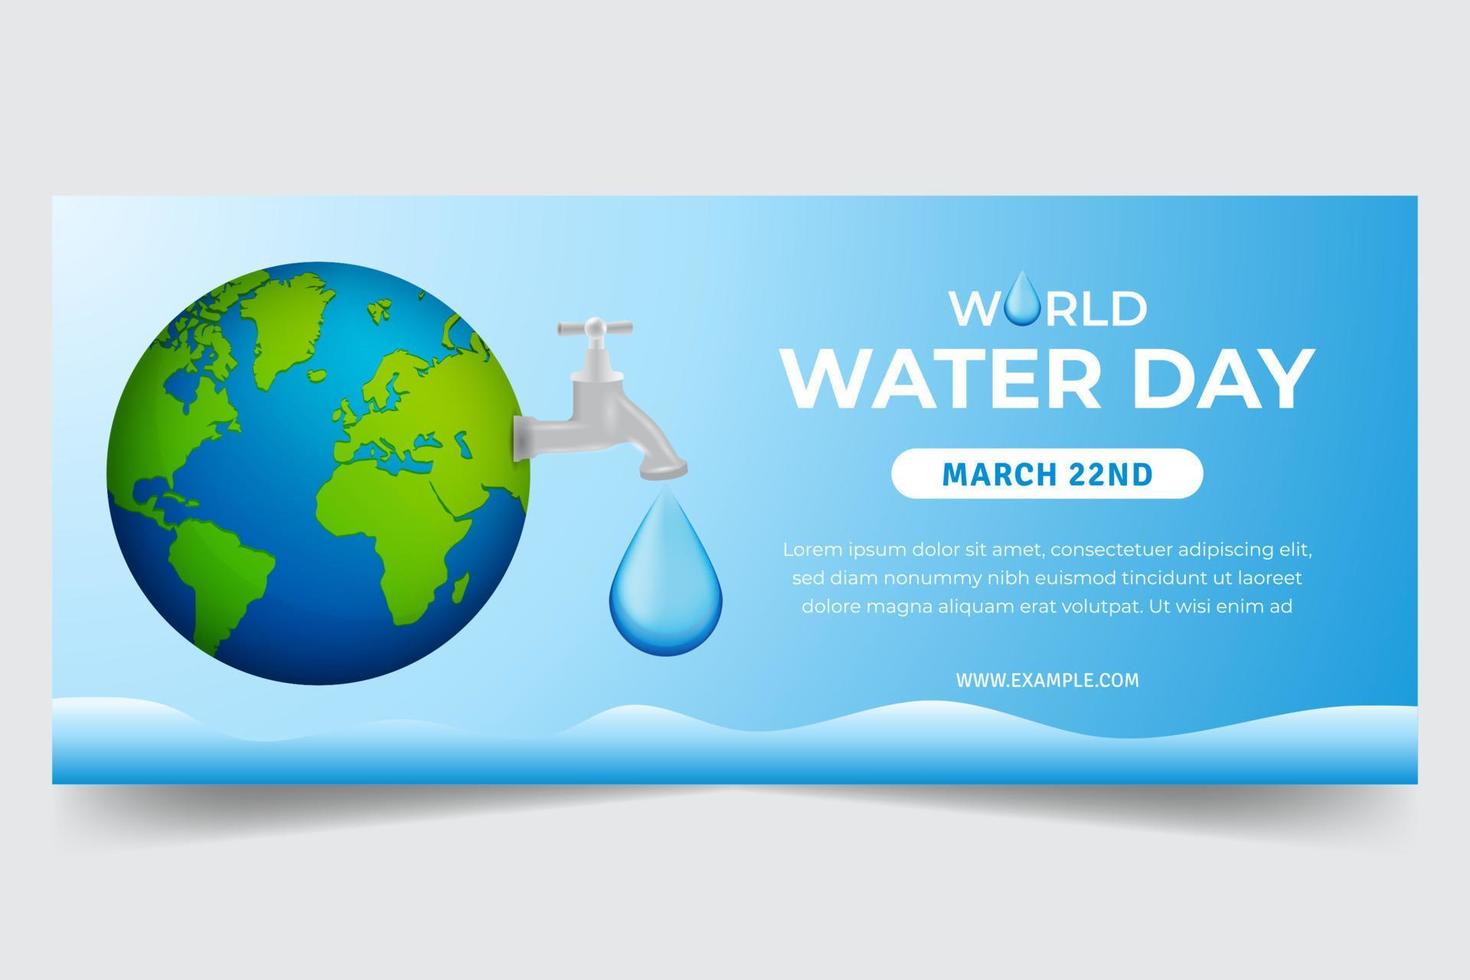 wereld water dag maart 22 met wereldbol en water kraan illustratie vector